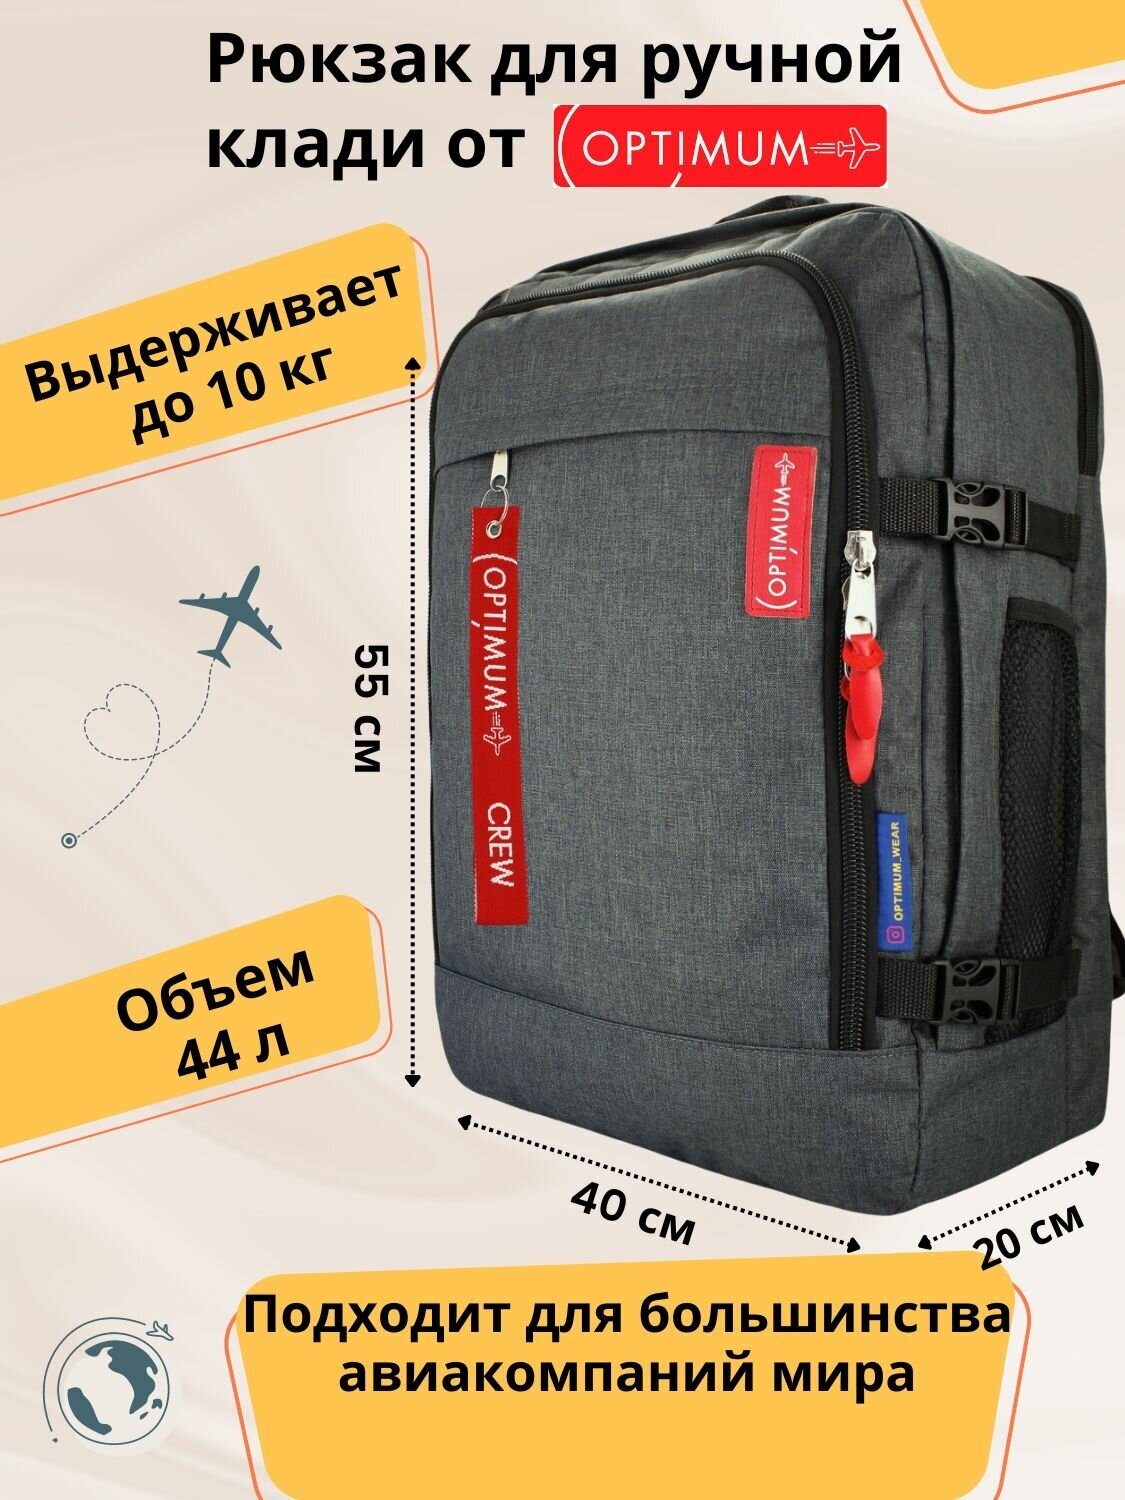 Рюкзак для путешествий дорожный ручная кладь 55х40х20 в самолет 44 л, темно-серый